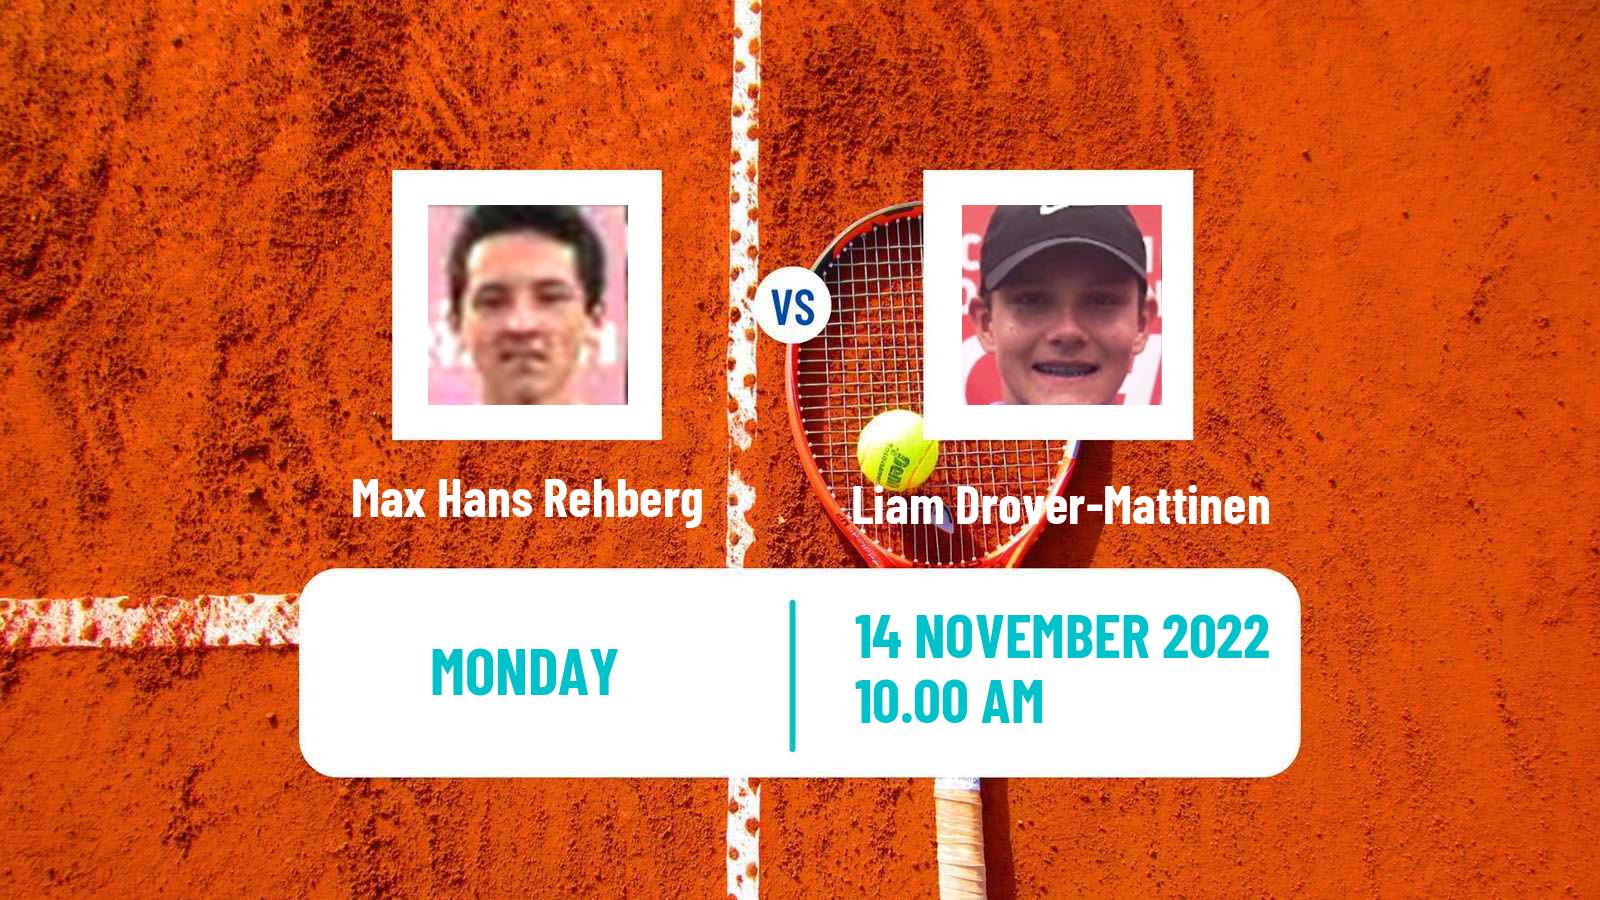 Tennis ATP Challenger Max Hans Rehberg - Liam Drover-Mattinen